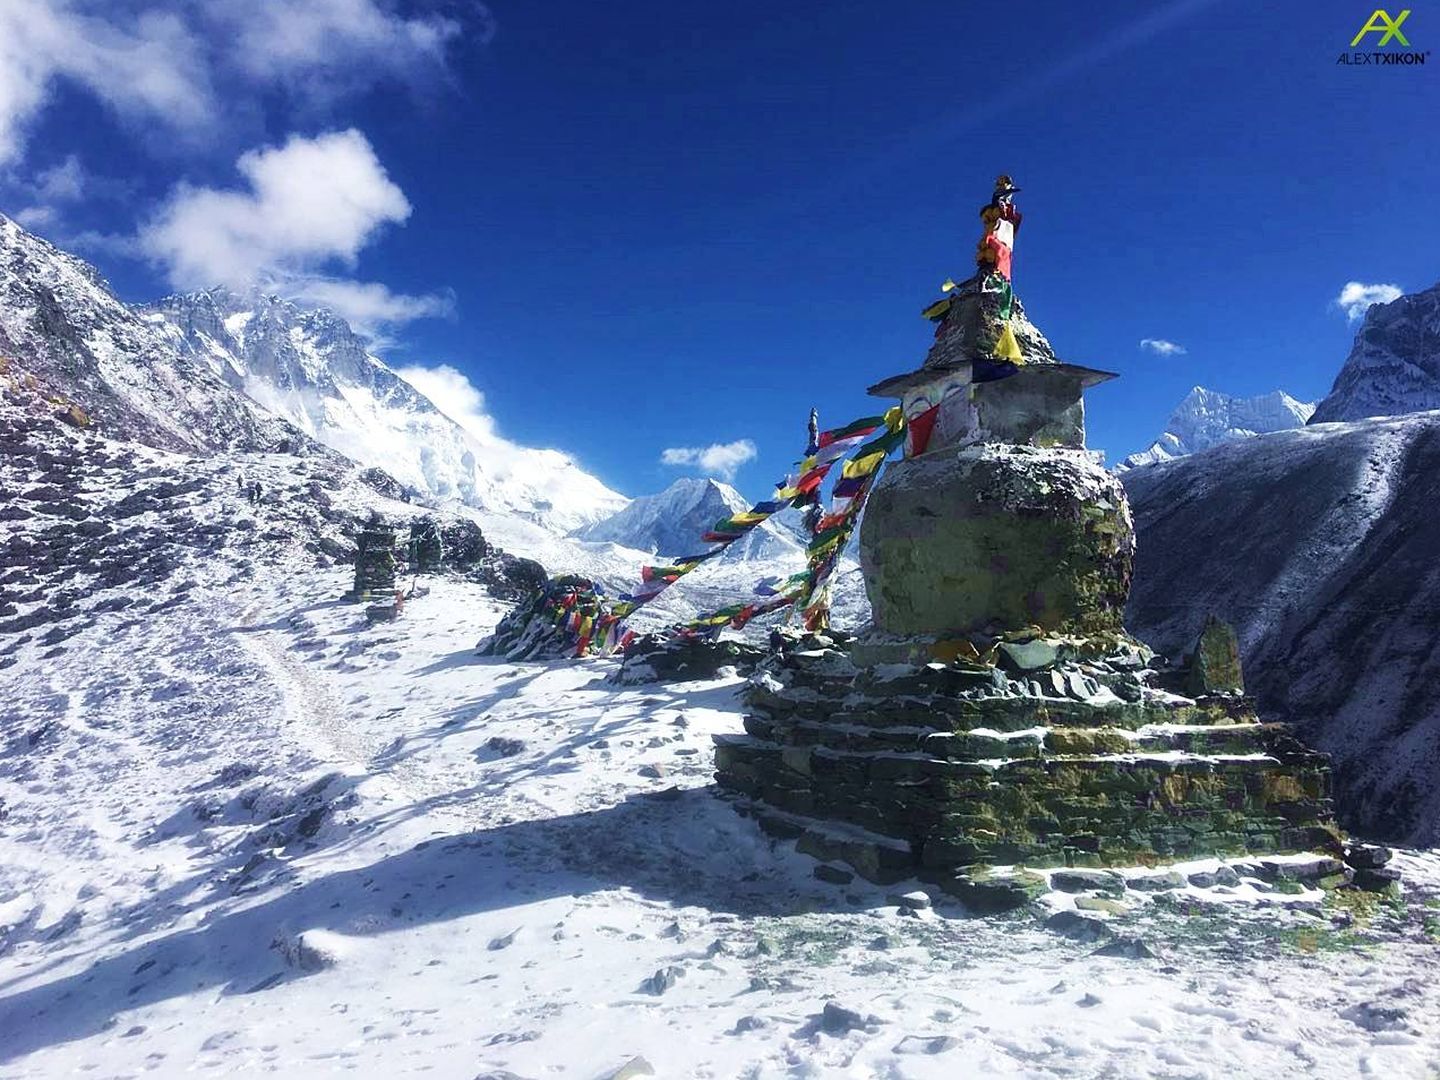 El viento, uno de los grandes contratiempos, es impredecible en el Monte Everest. (Alex Txikon)